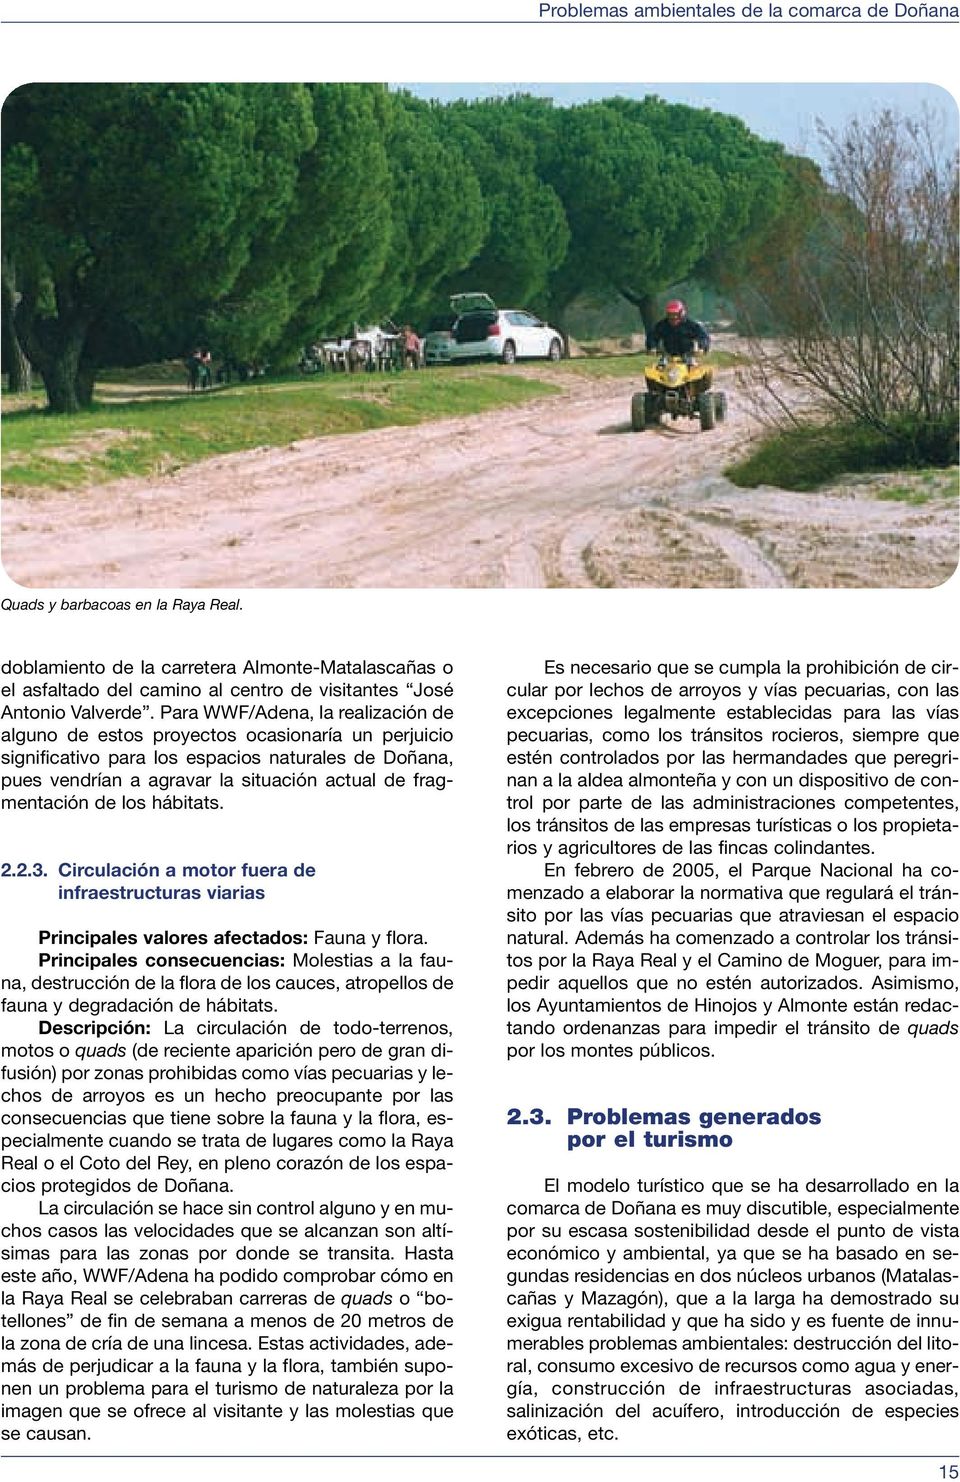 Para WWF/Adena, la realización de alguno de estos proyectos ocasionaría un perjuicio significativo para los espacios naturales de Doñana, pues vendrían a agravar la situación actual de fragmentación